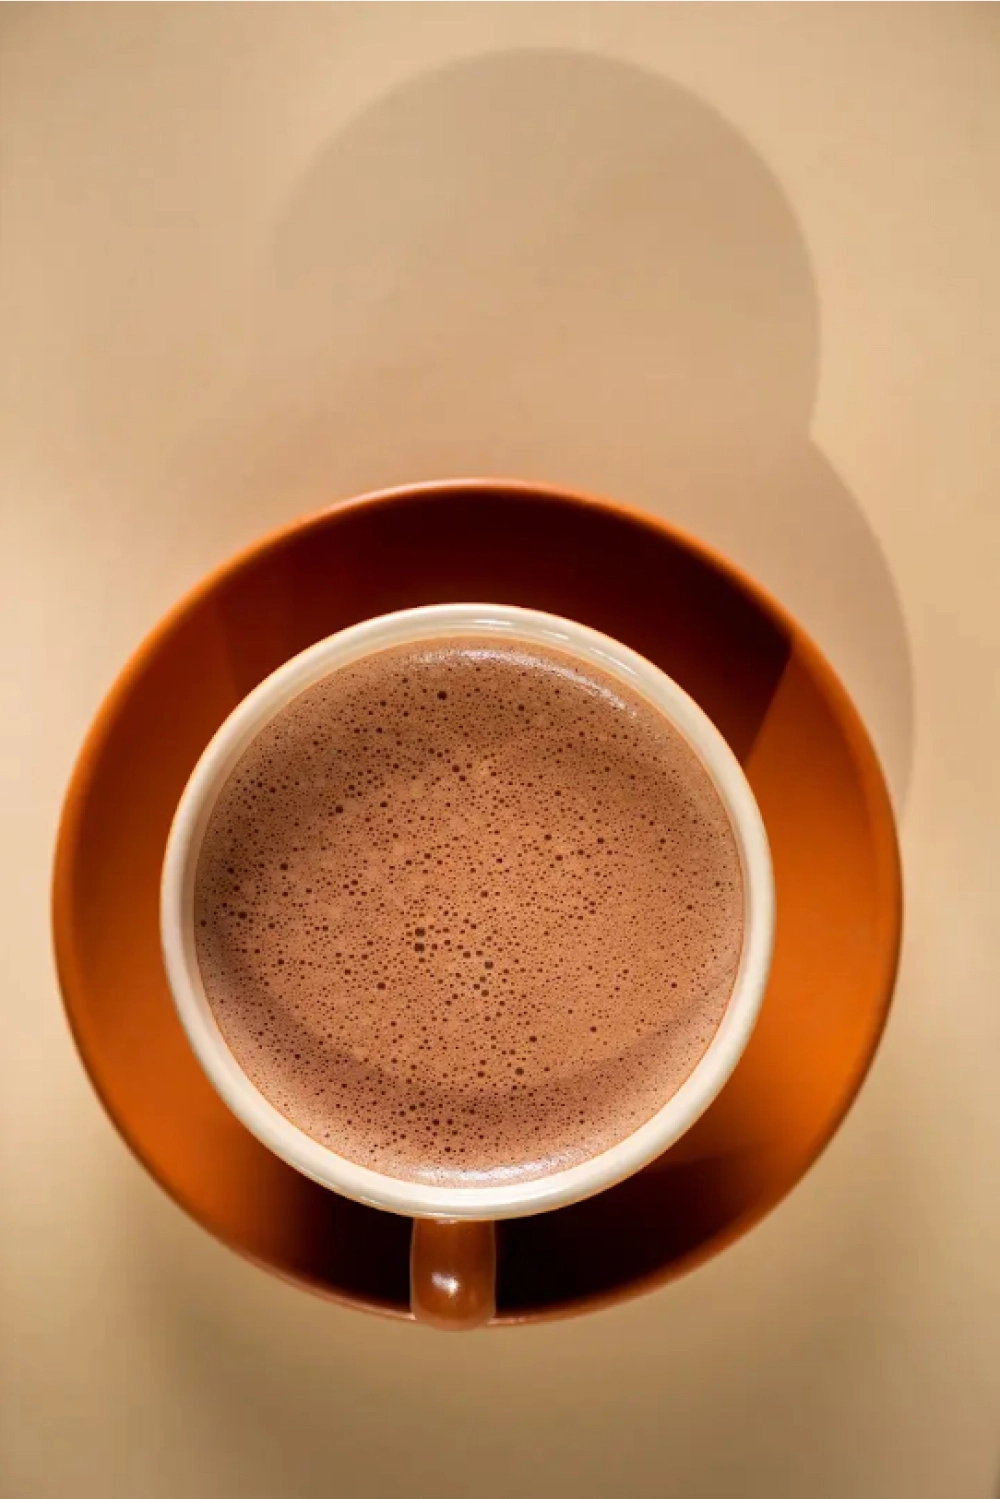 Xicara de cafe vista de cima - Netcoffee